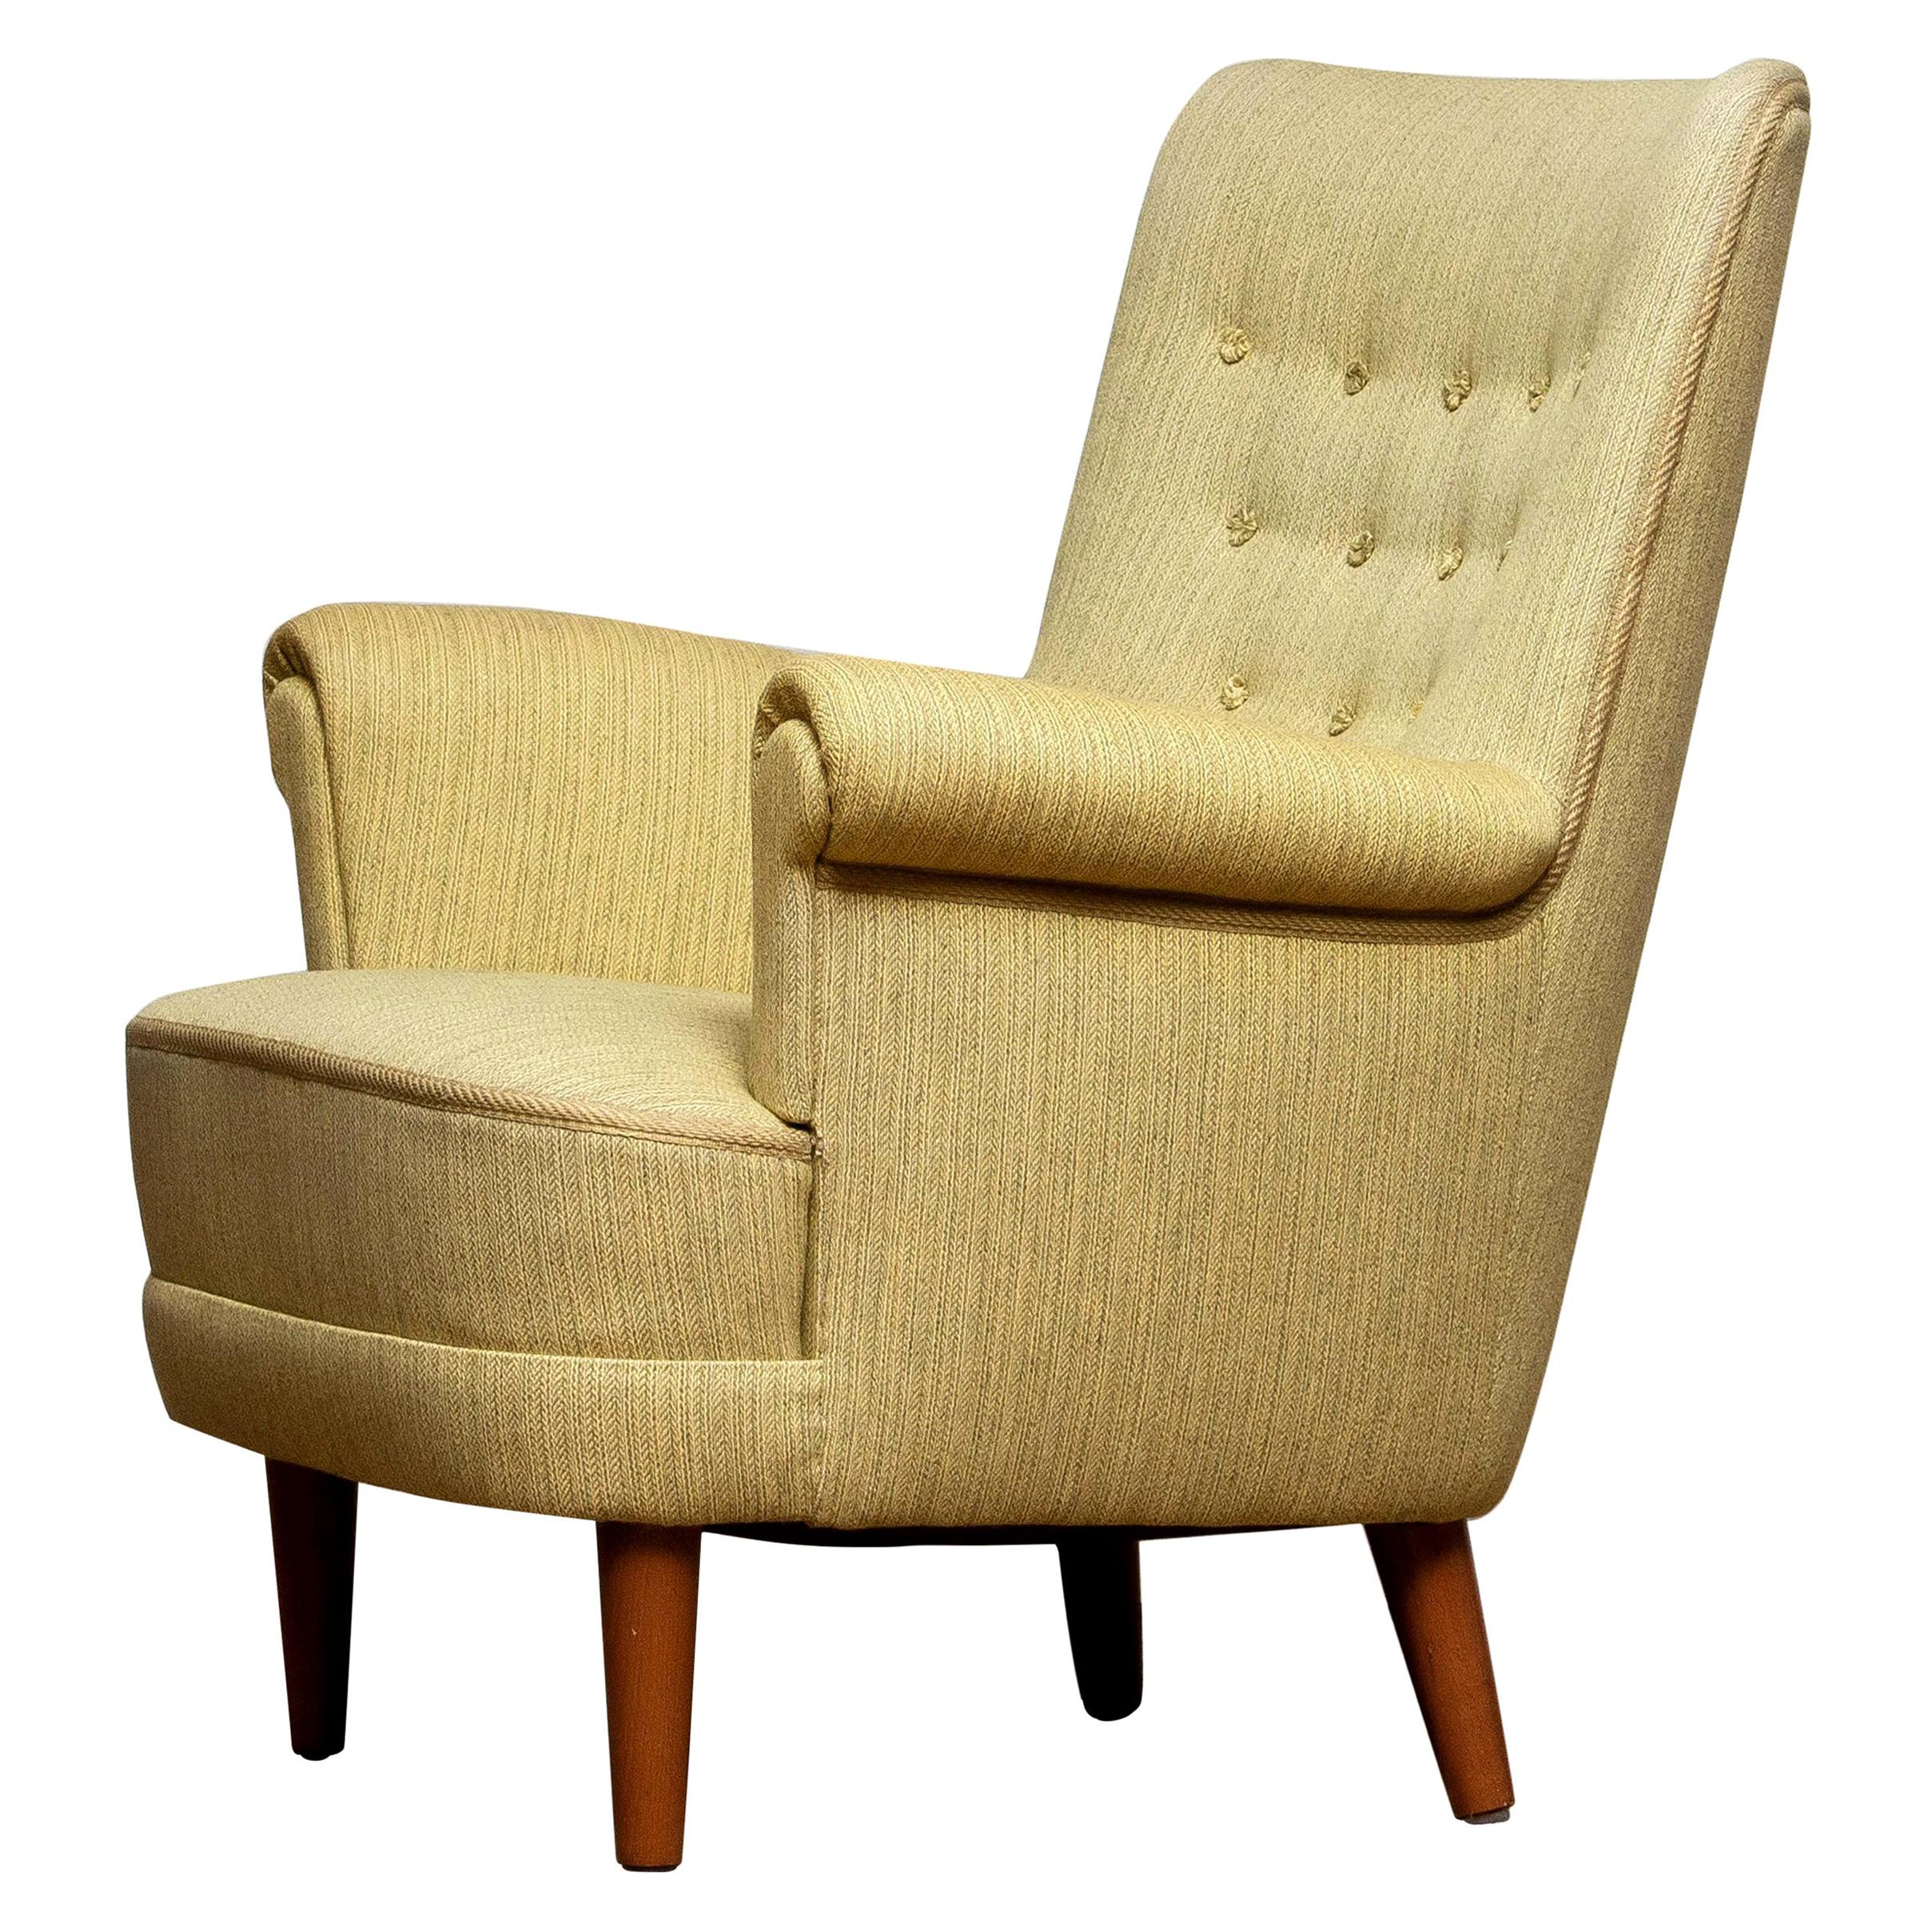 Green Easy Arm Lounge Chair "Samsas" by Carl Malmsten for OH Sjogren, 1950s